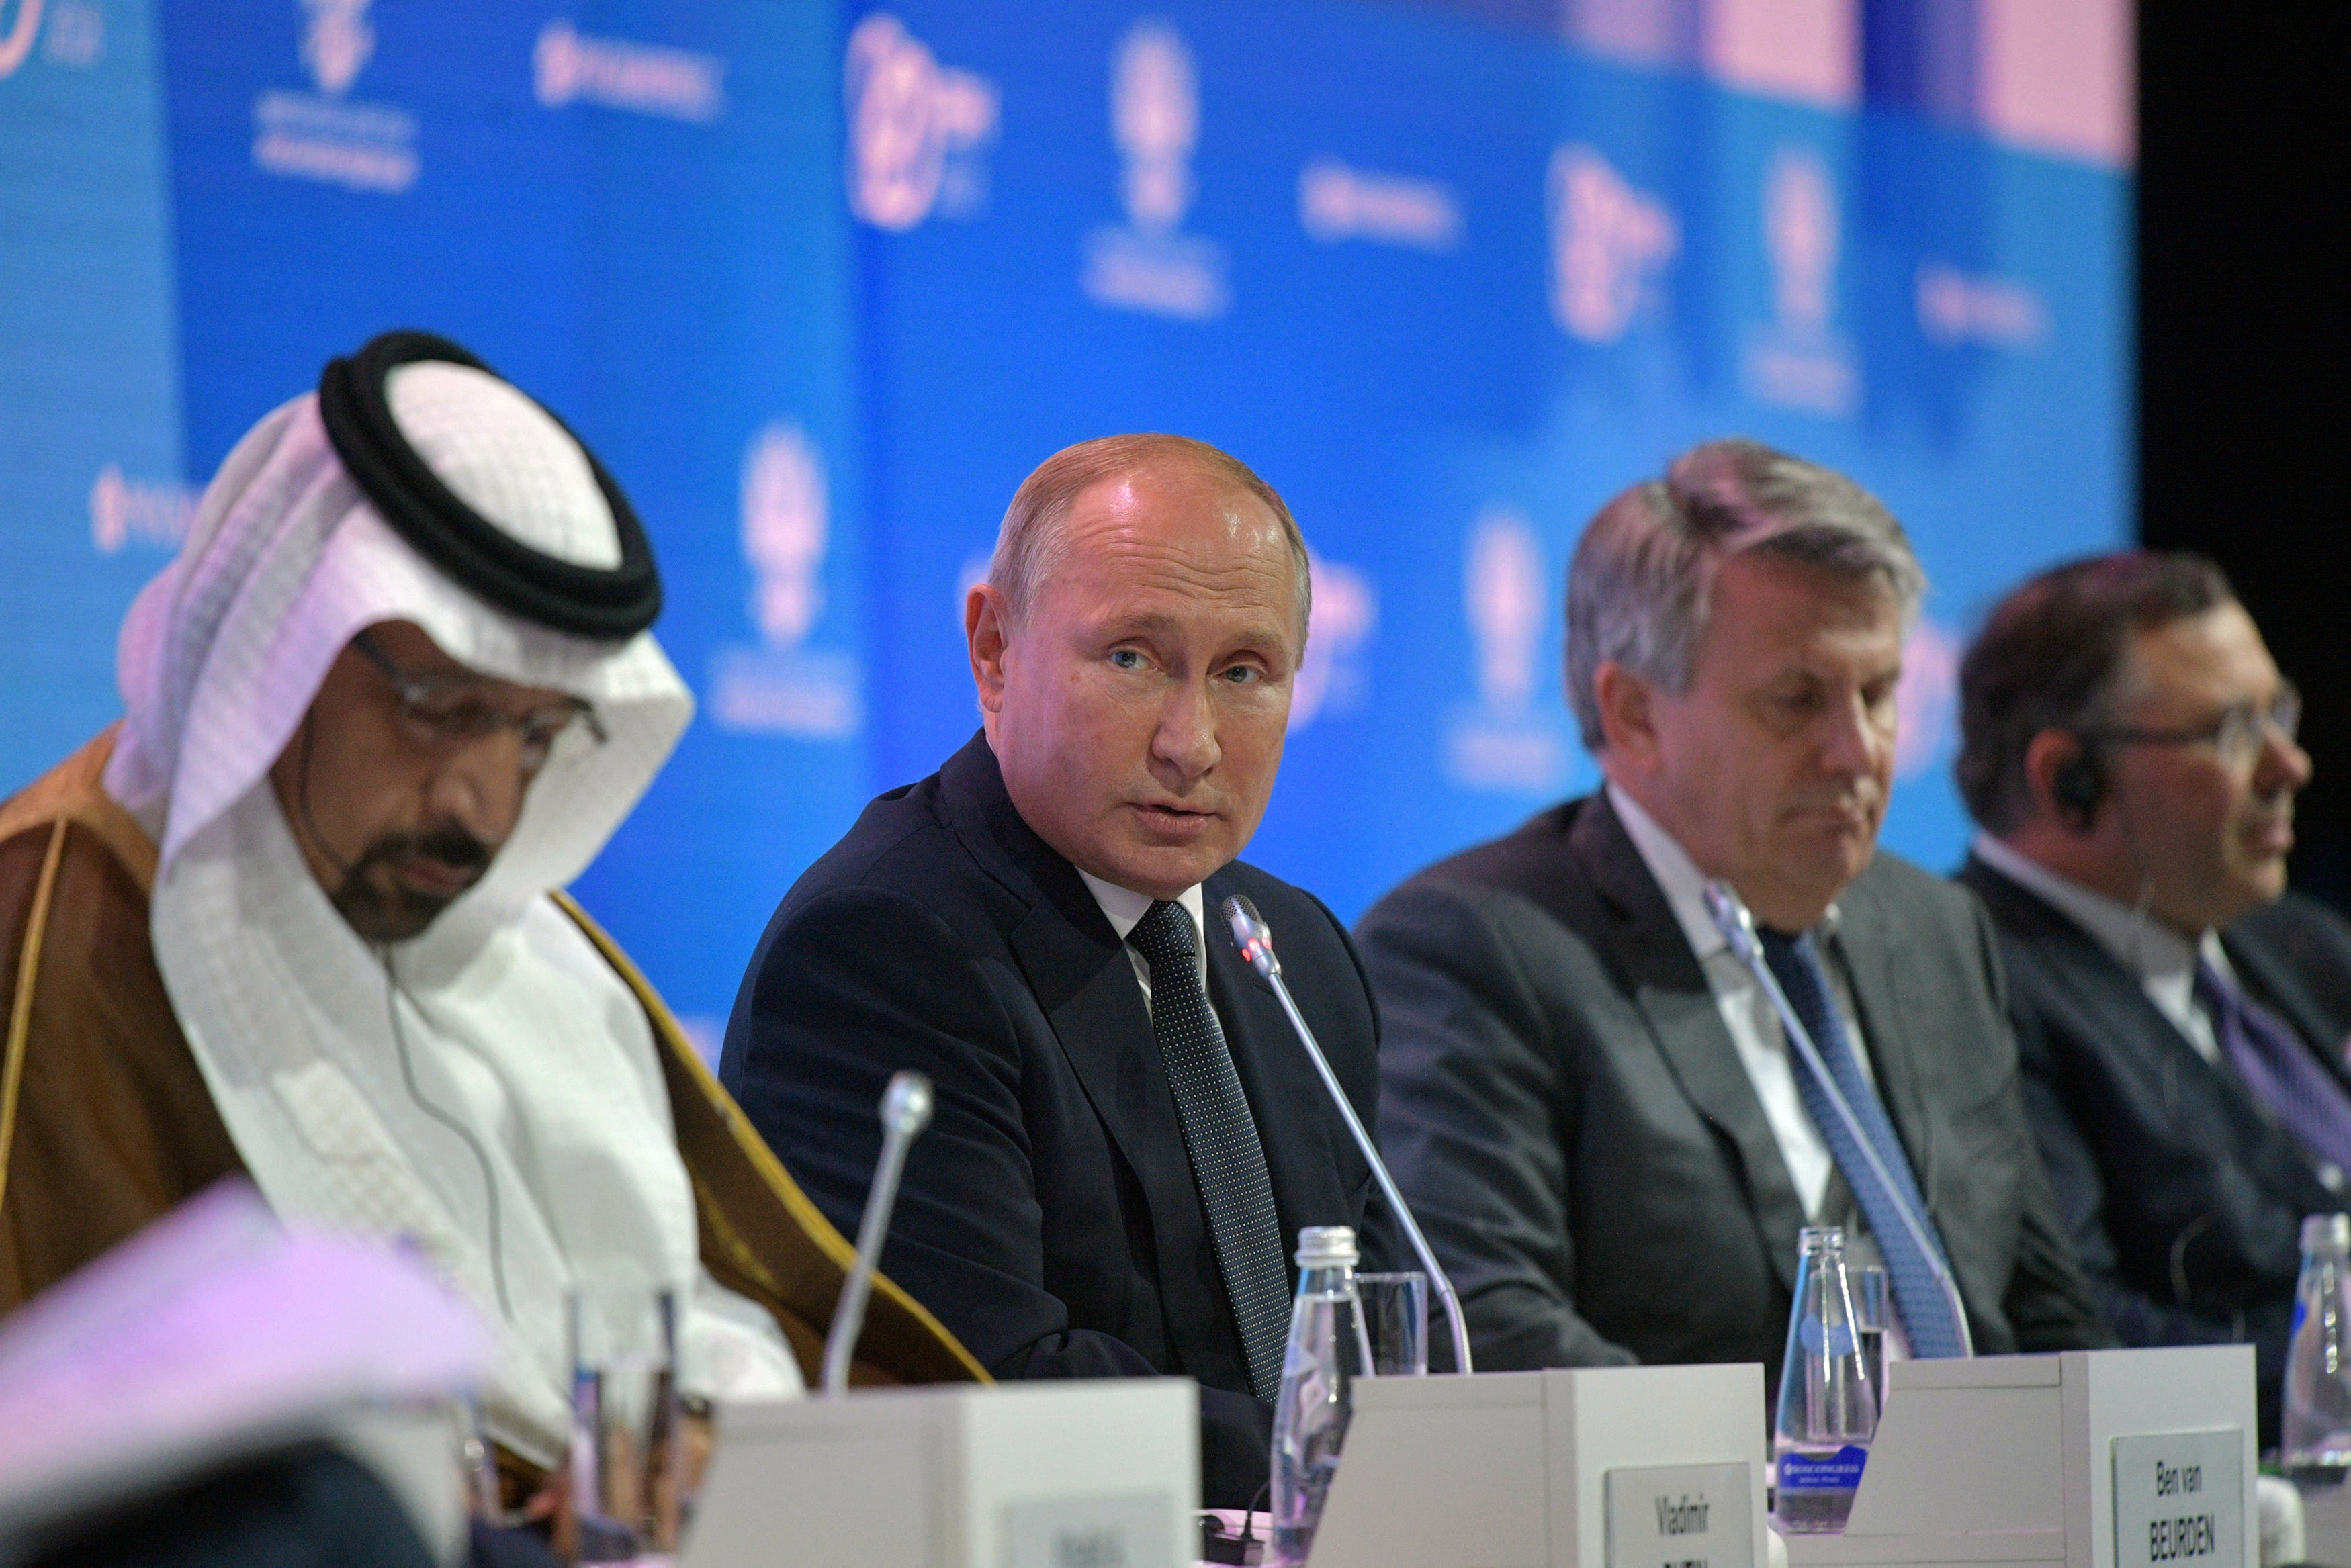 الرئيس الروسي فلاديمير بوتين يحضر جلسة المنتدى الدولي